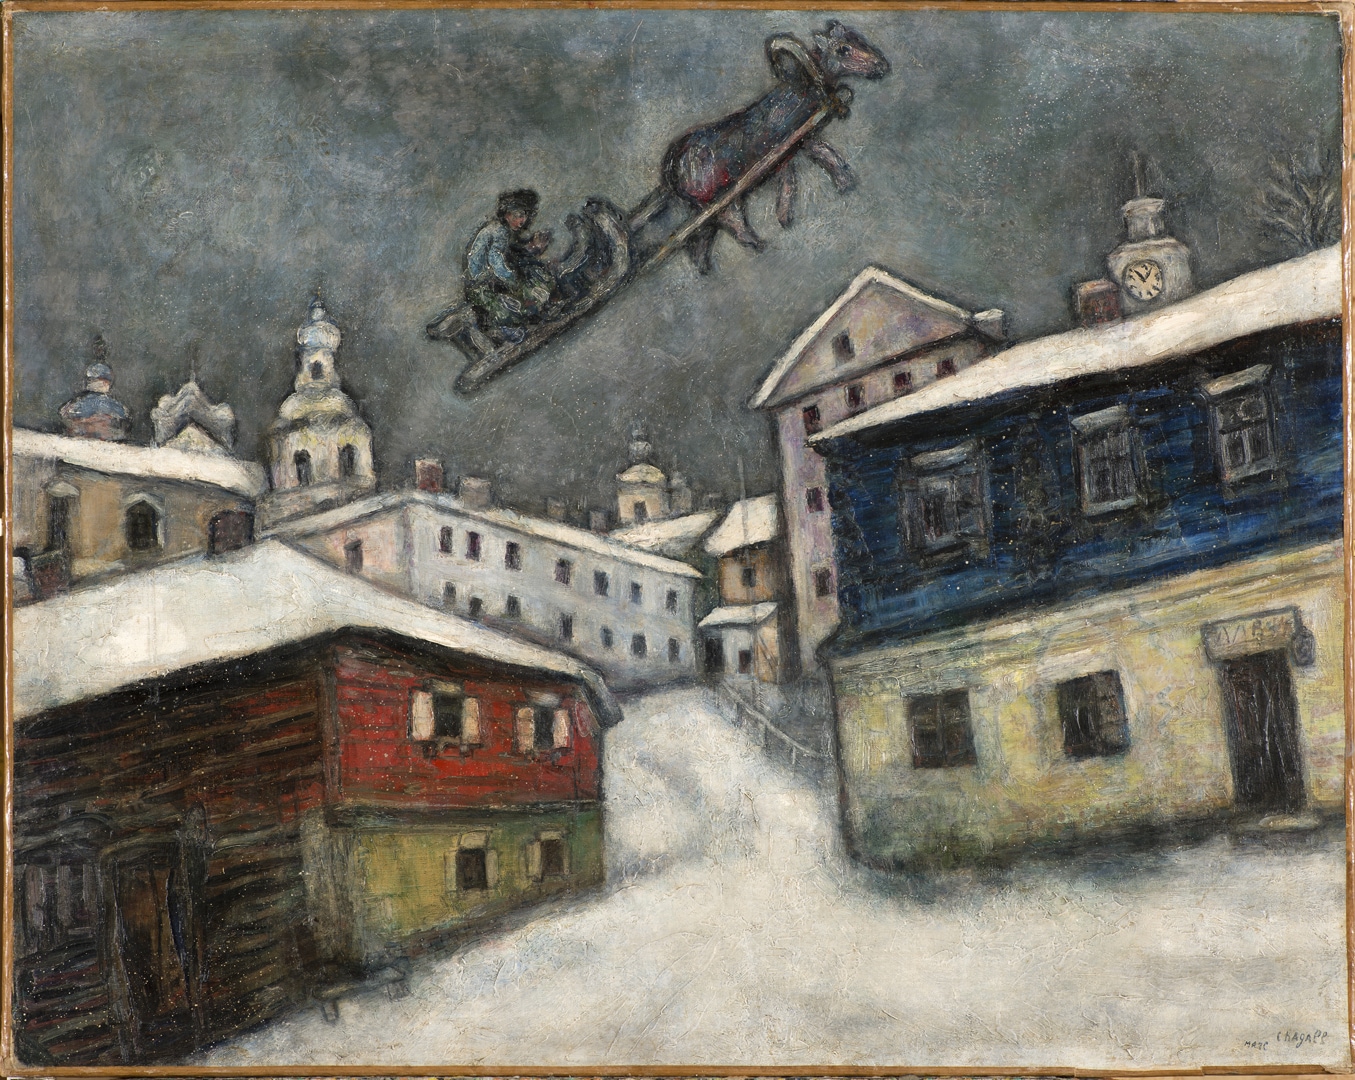 Villaggio russo (1929). Olio su tela, 73x92 cm - Private Collection, Swiss - © Chagall ® by SIAE 2019